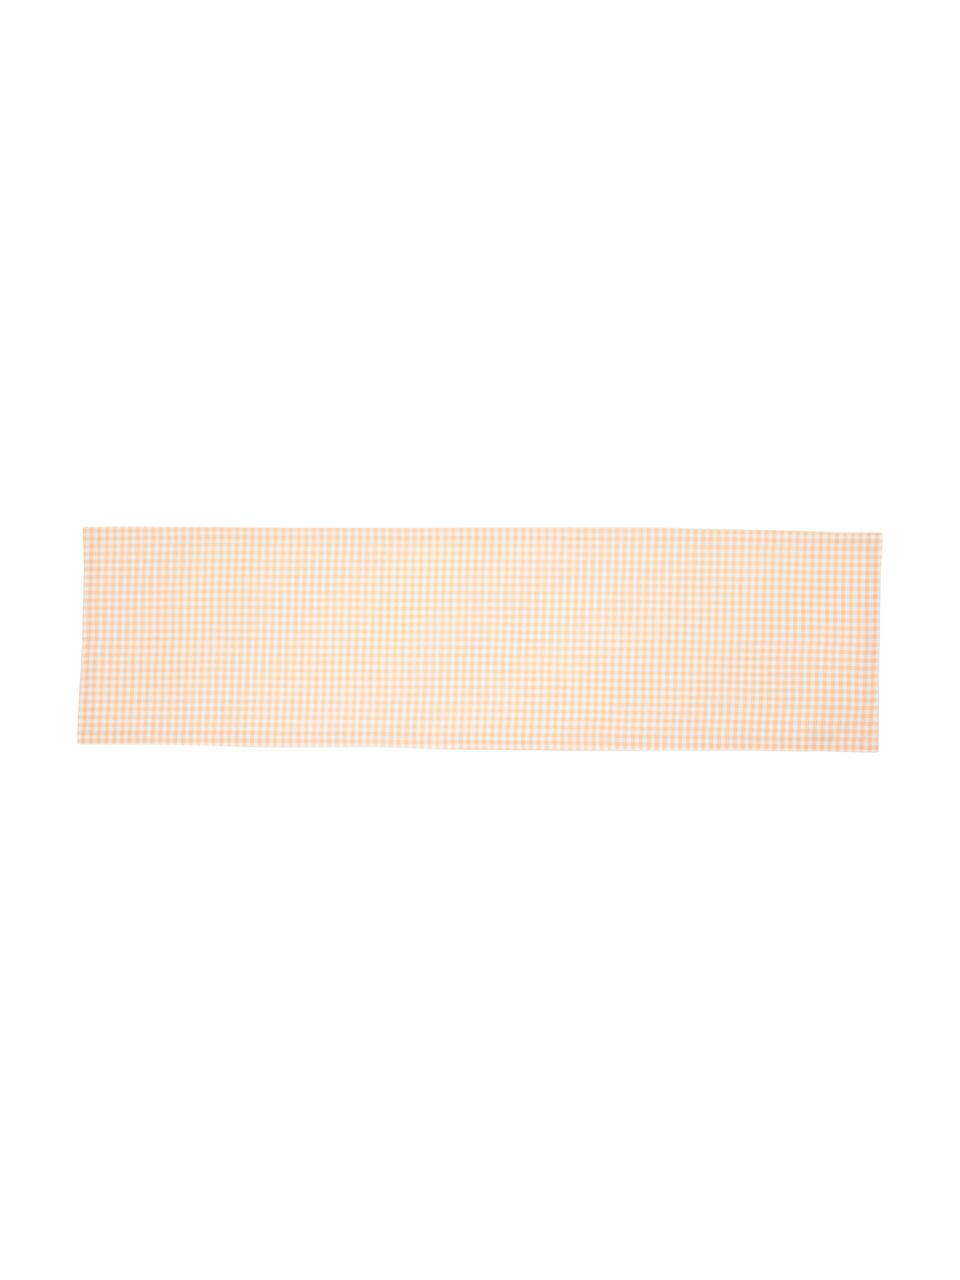 Baumwoll-Tischläufer Vicky mit Karo-Muster, 100 % Baumwolle, Lachsfarben, Weiß, B 40 x L 145 cm